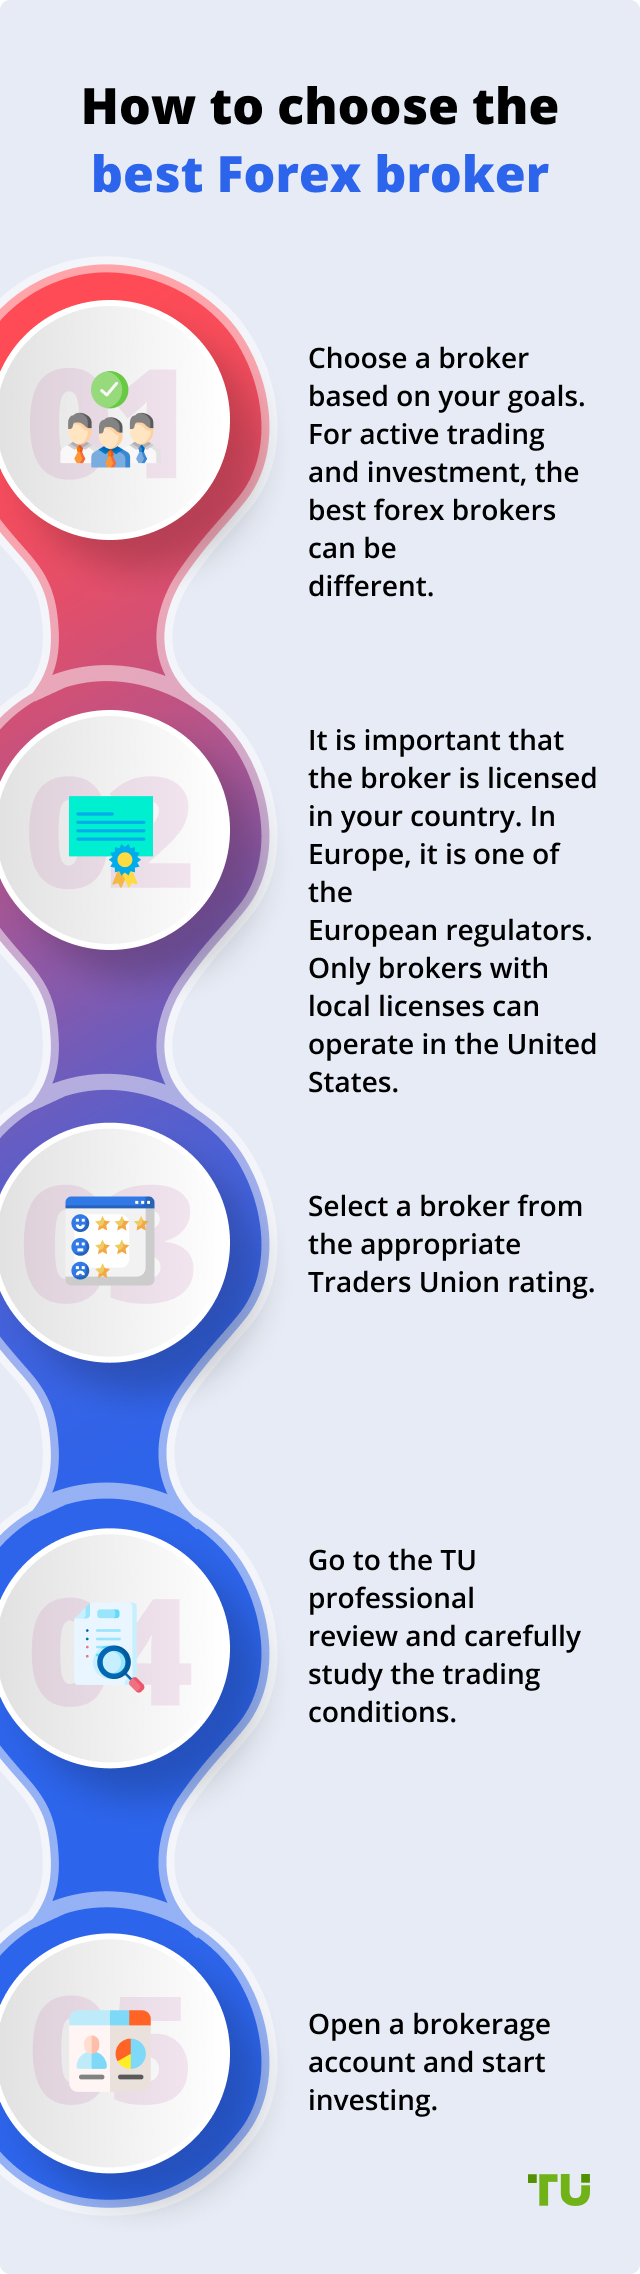 Rating agencies of forex brokers cara membuat mprc forex broker